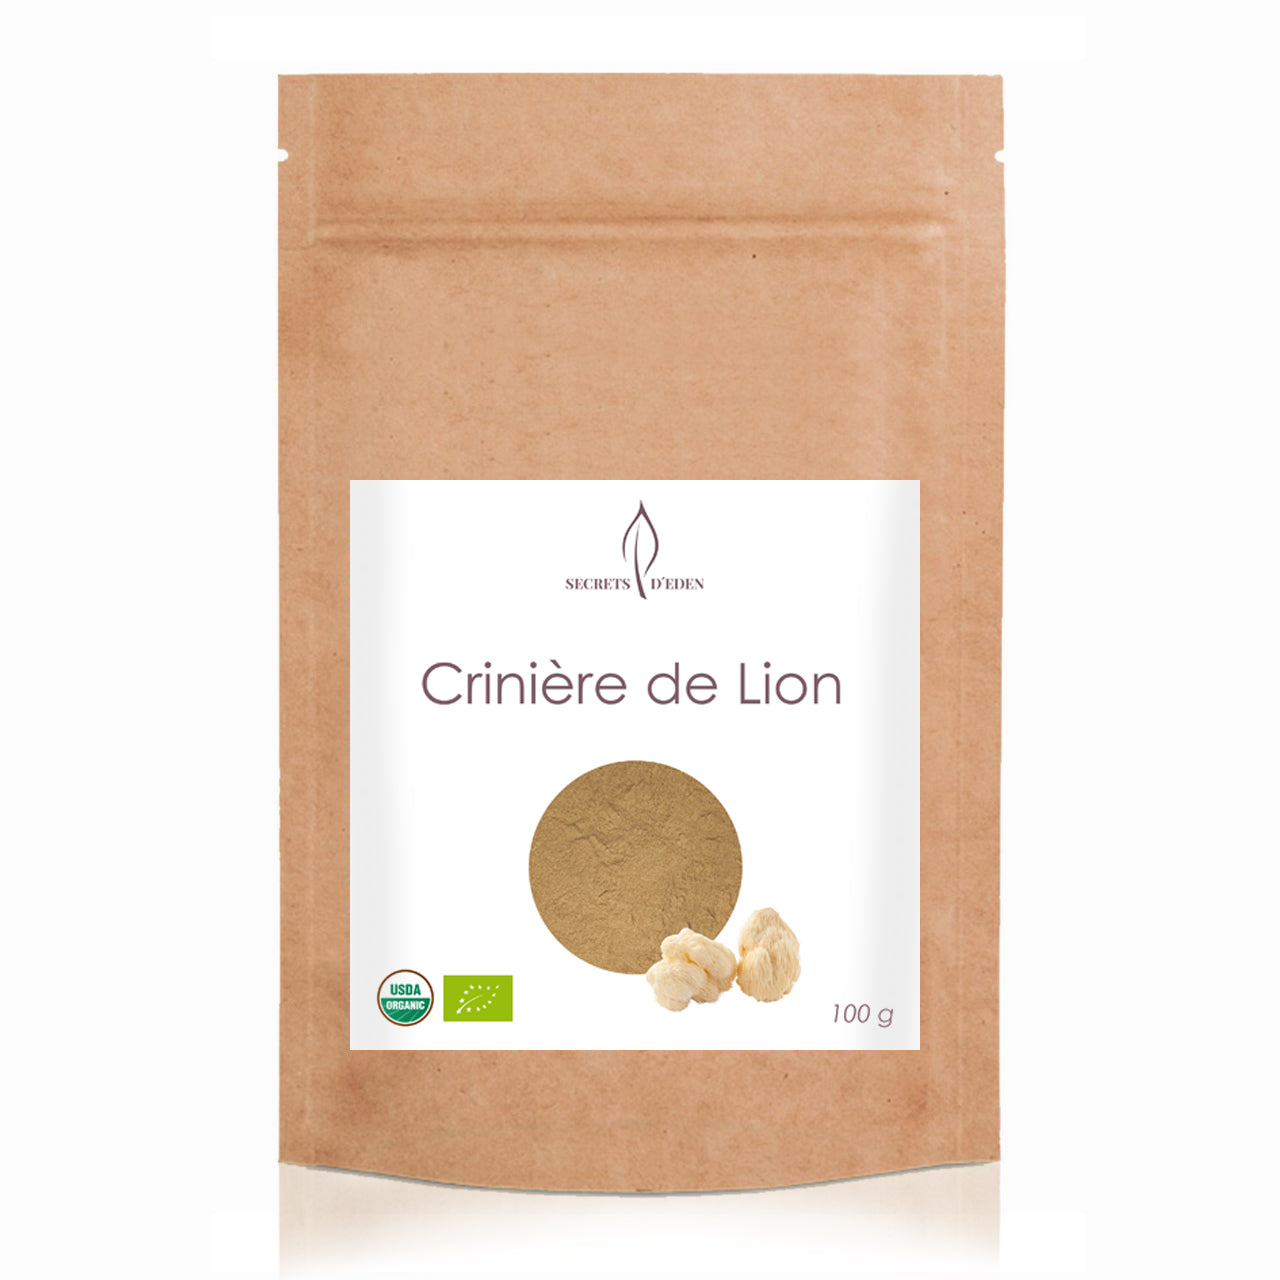 Champignon Crinière de lion bio en poudre aux nombreux bienfaits – vente en ligne - SECRETS D'EDEN